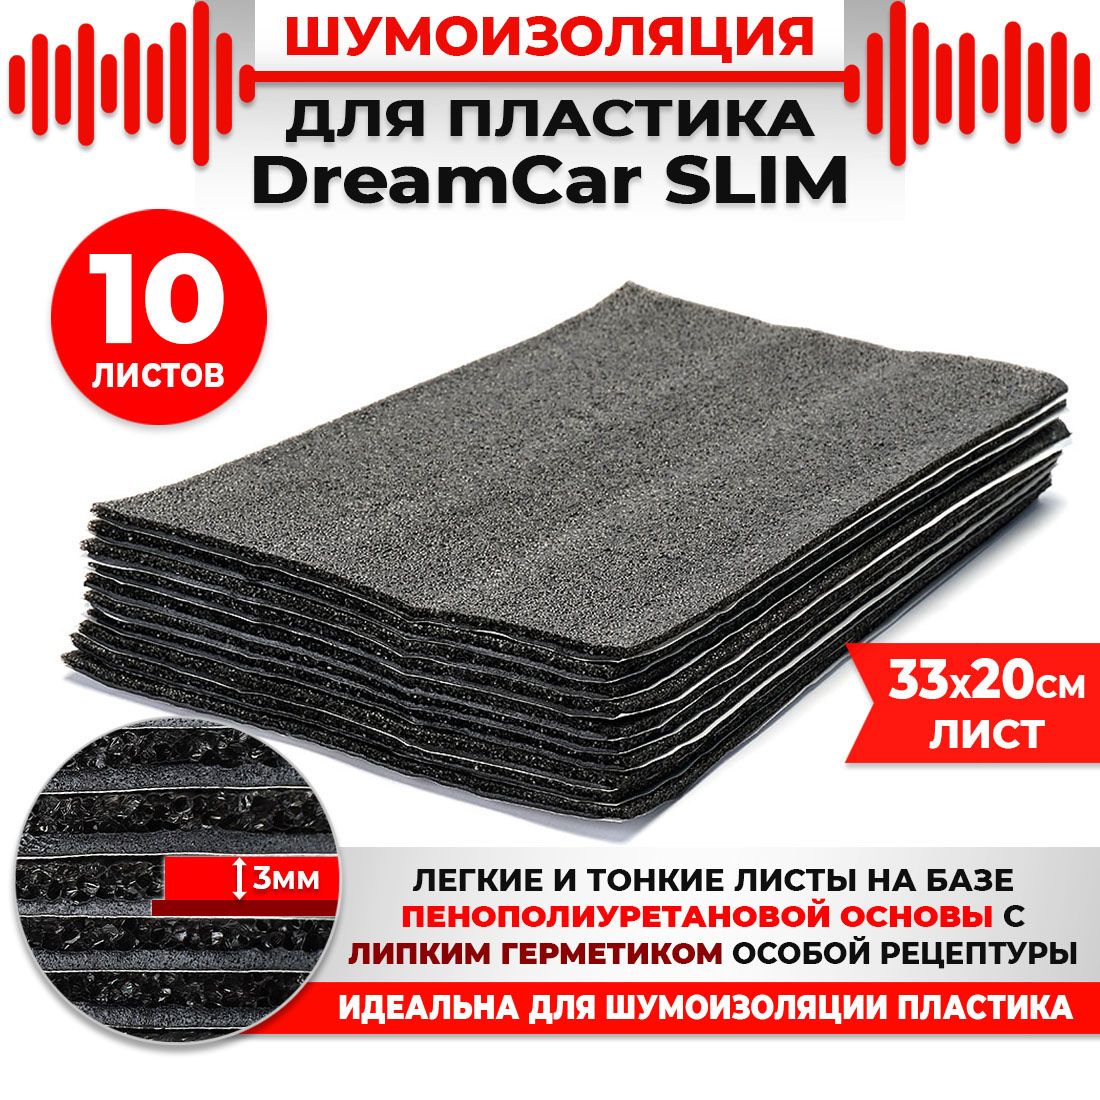 10 шт. Шумоизоляция 2х слойная для пластика DreamCar Slim 3мм 33x20см 10 листов